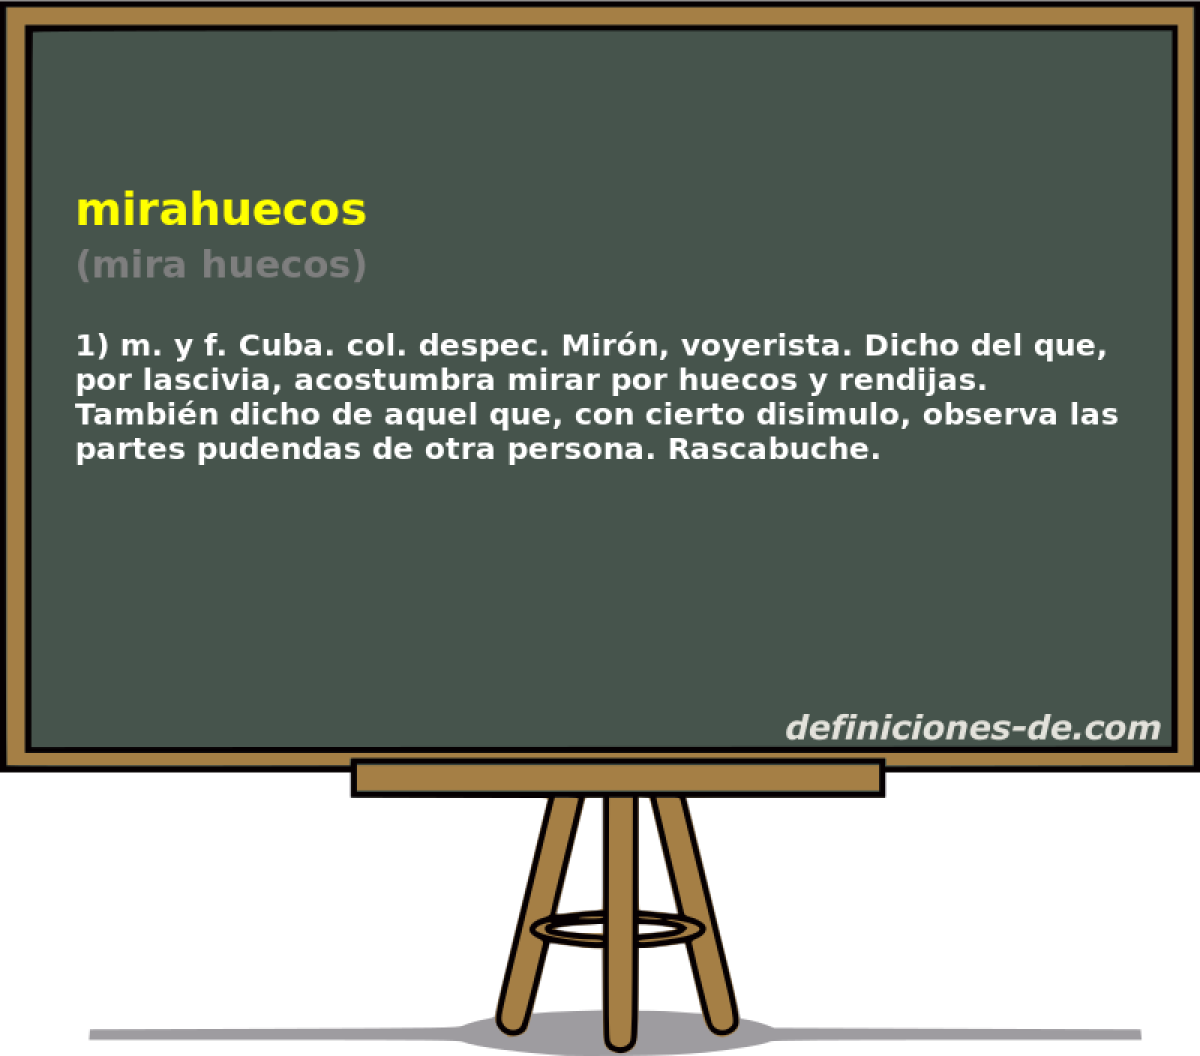 mirahuecos (mira huecos)